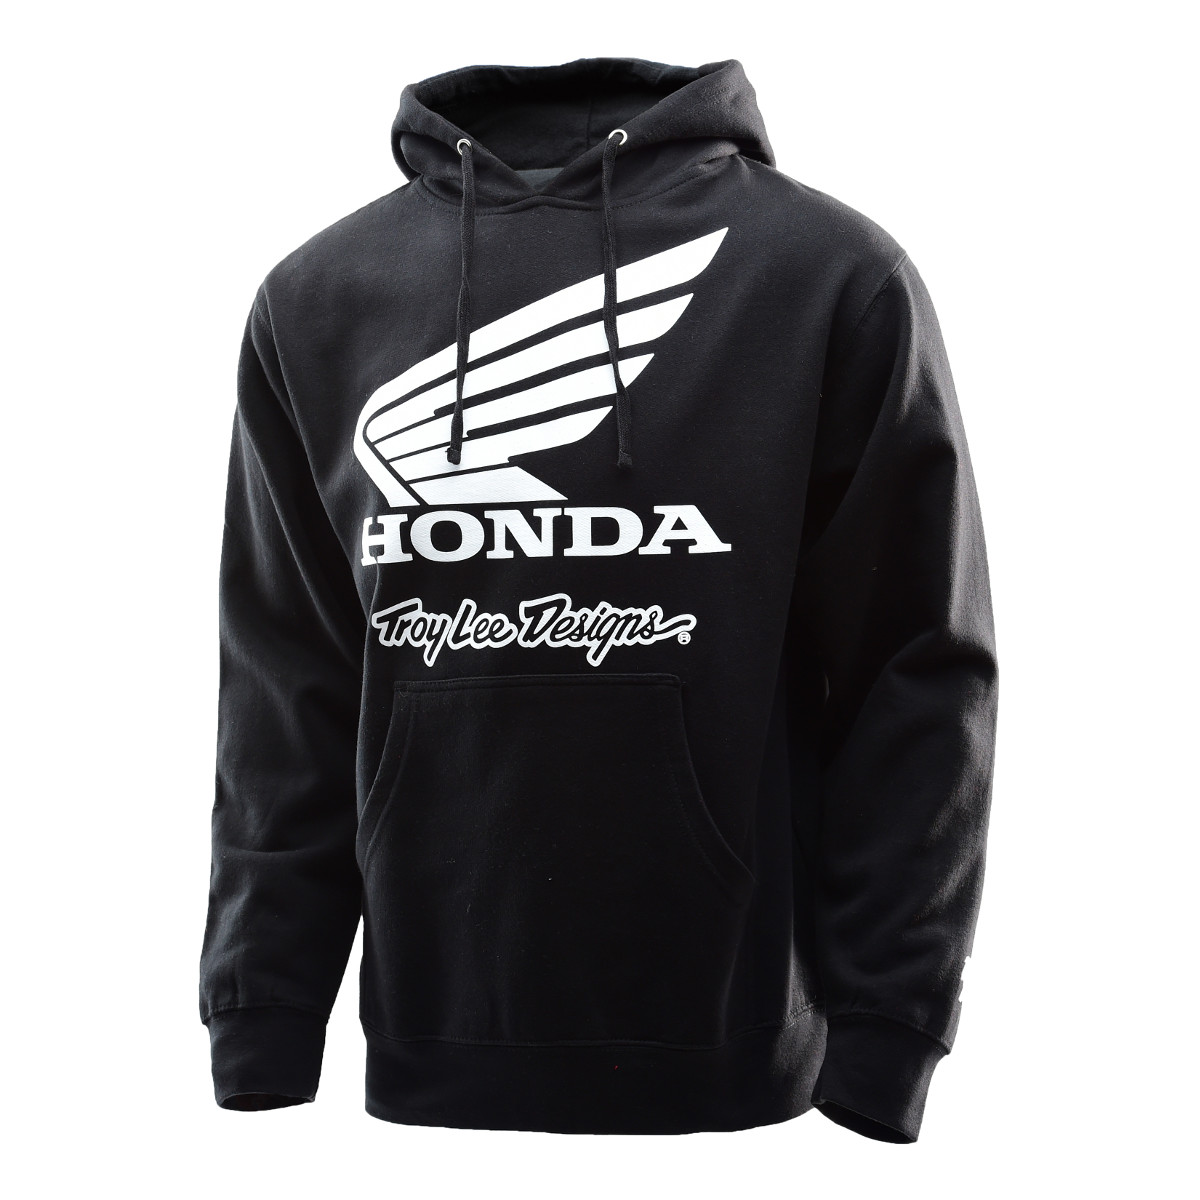 Troy Lee Designs Felpa Honda Wing Black